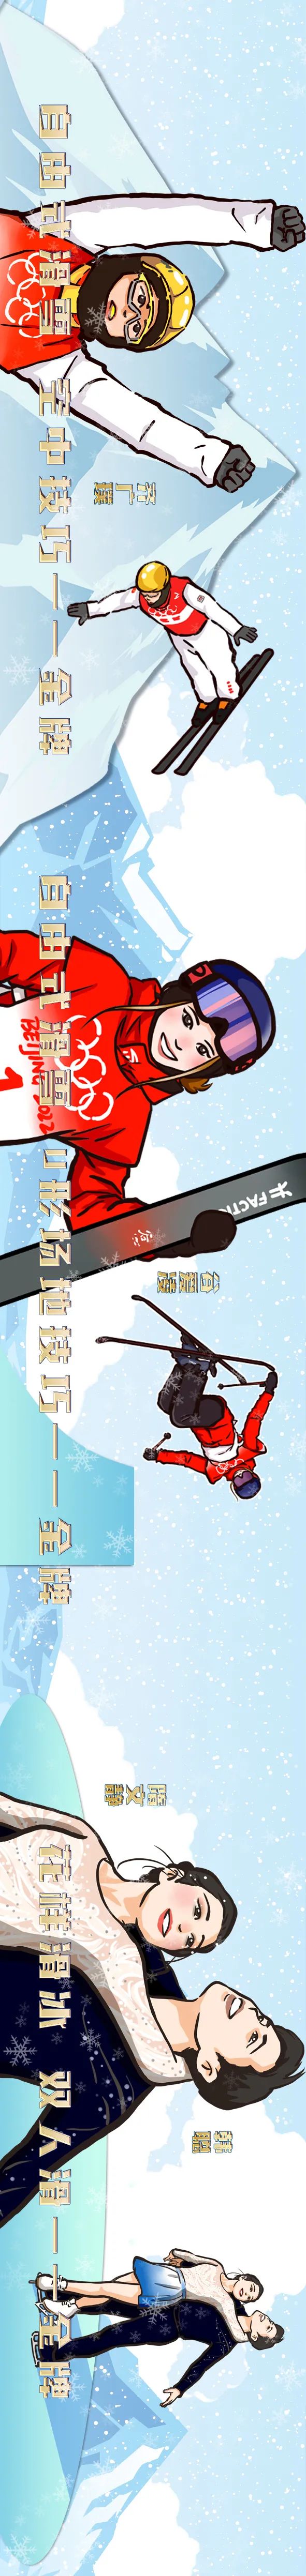 世博动漫兰珍妮担纲创意和主绘，中国冬奥军团系列漫像“全家福”闪亮登场